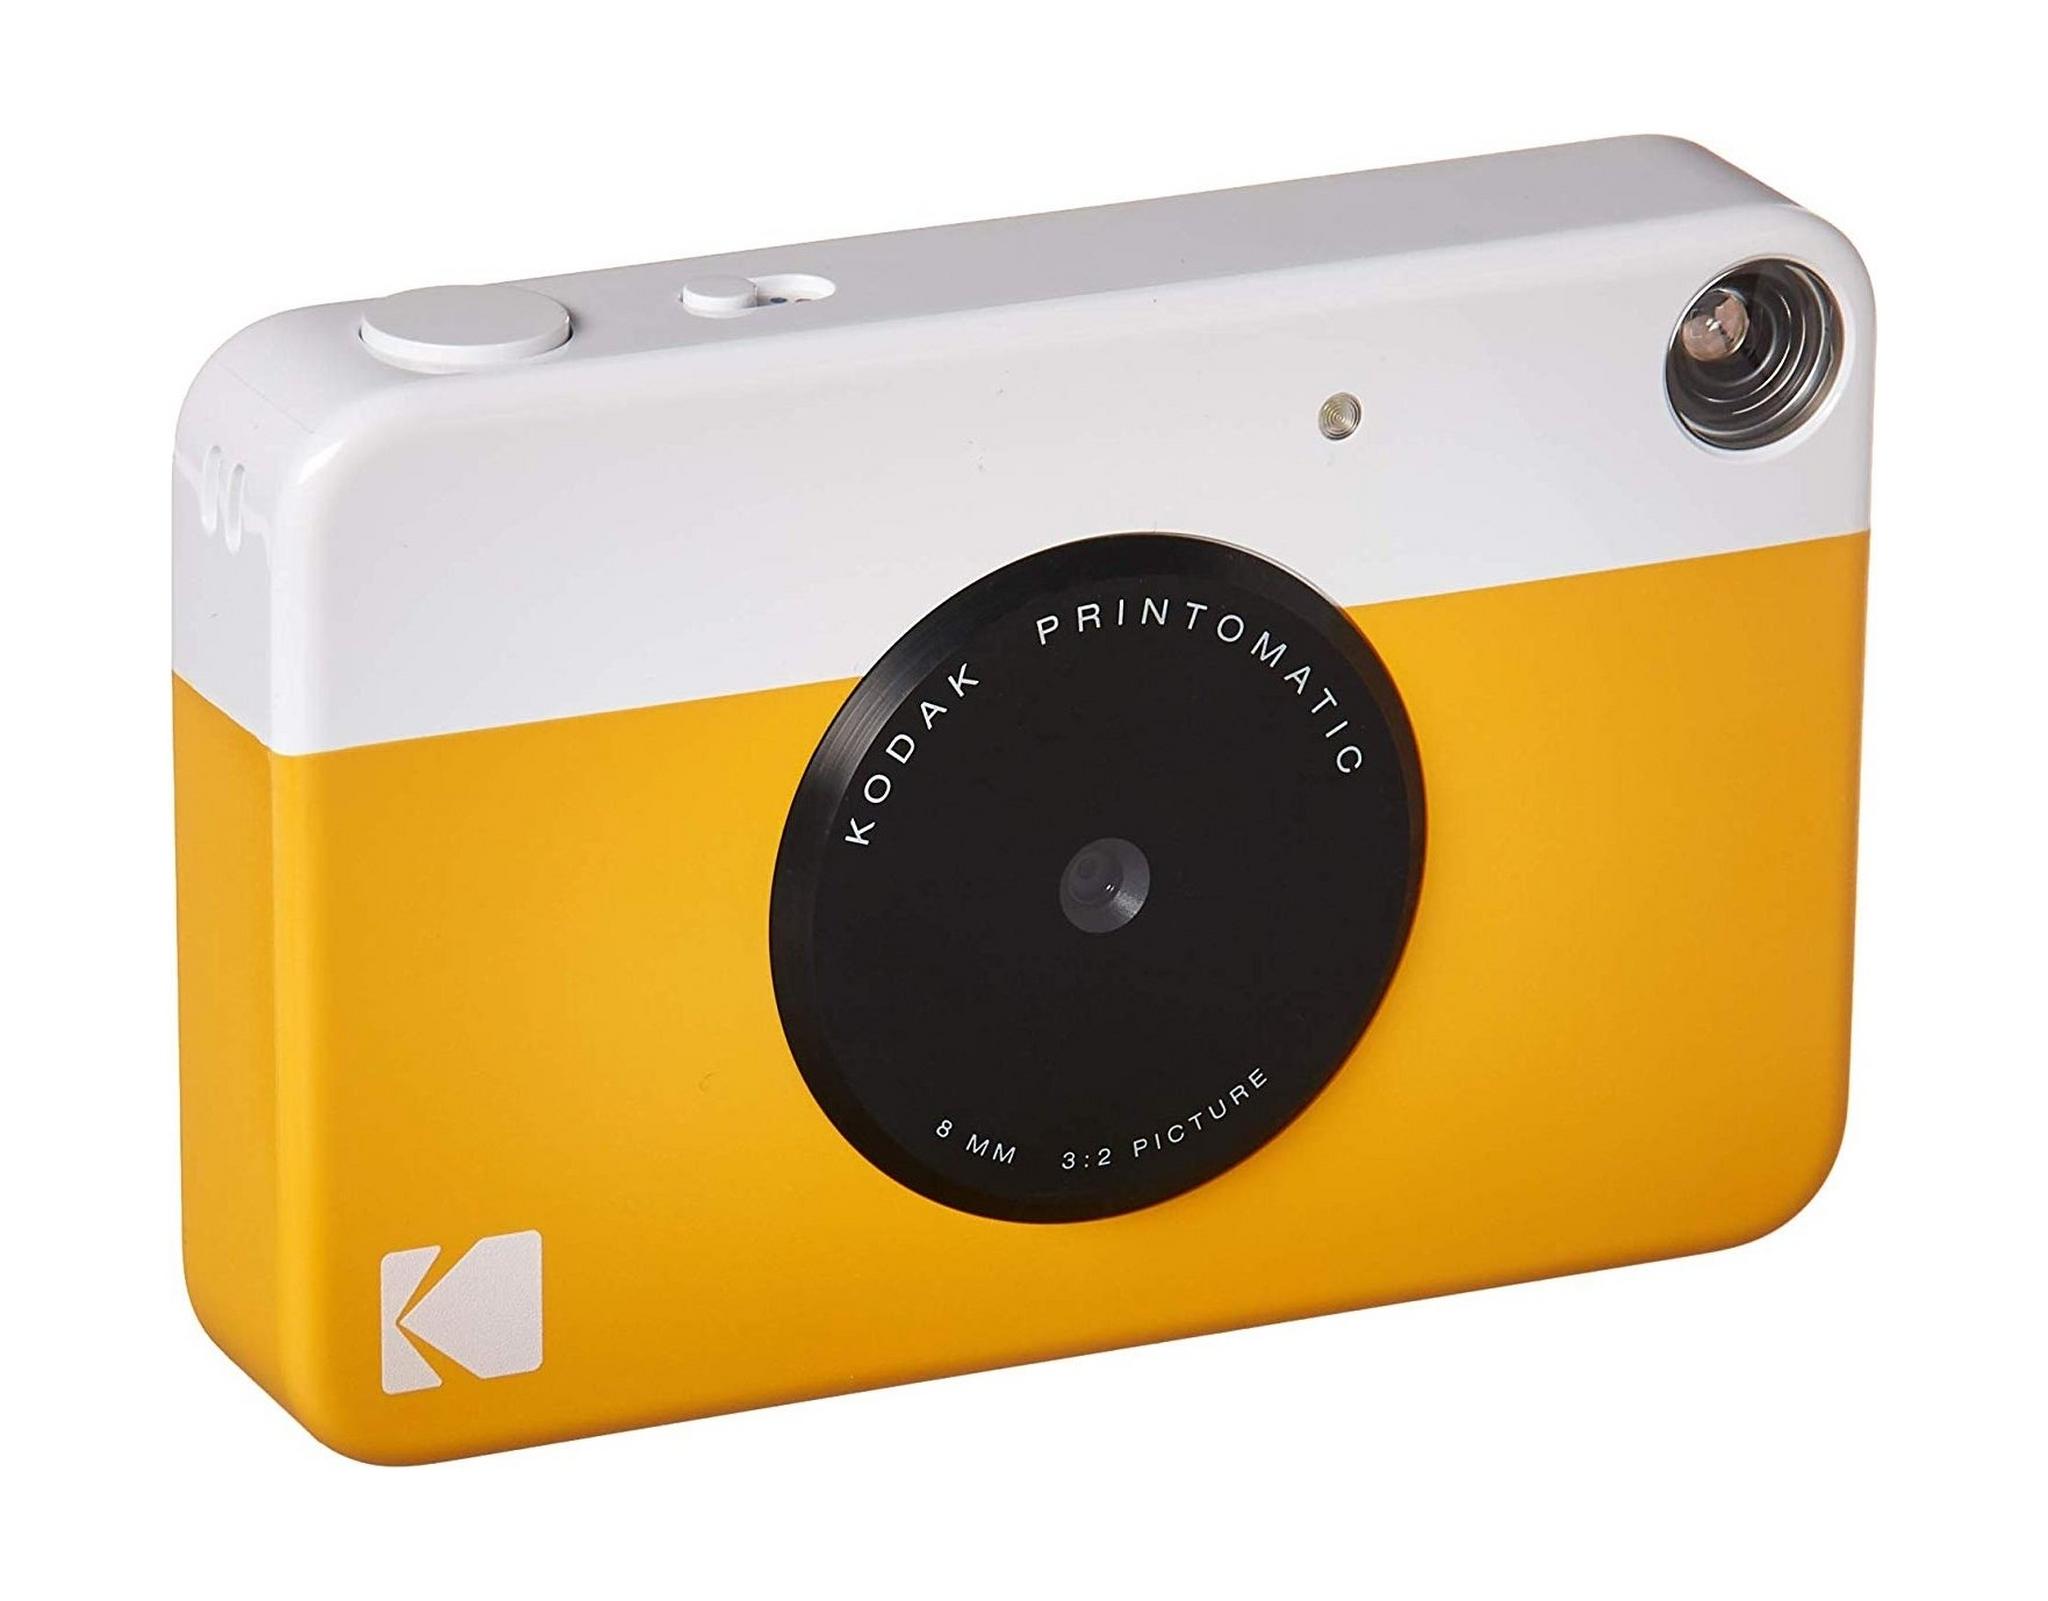 كاميرا كوداك برينتوماتيك الرقمية الفورية - أصفر